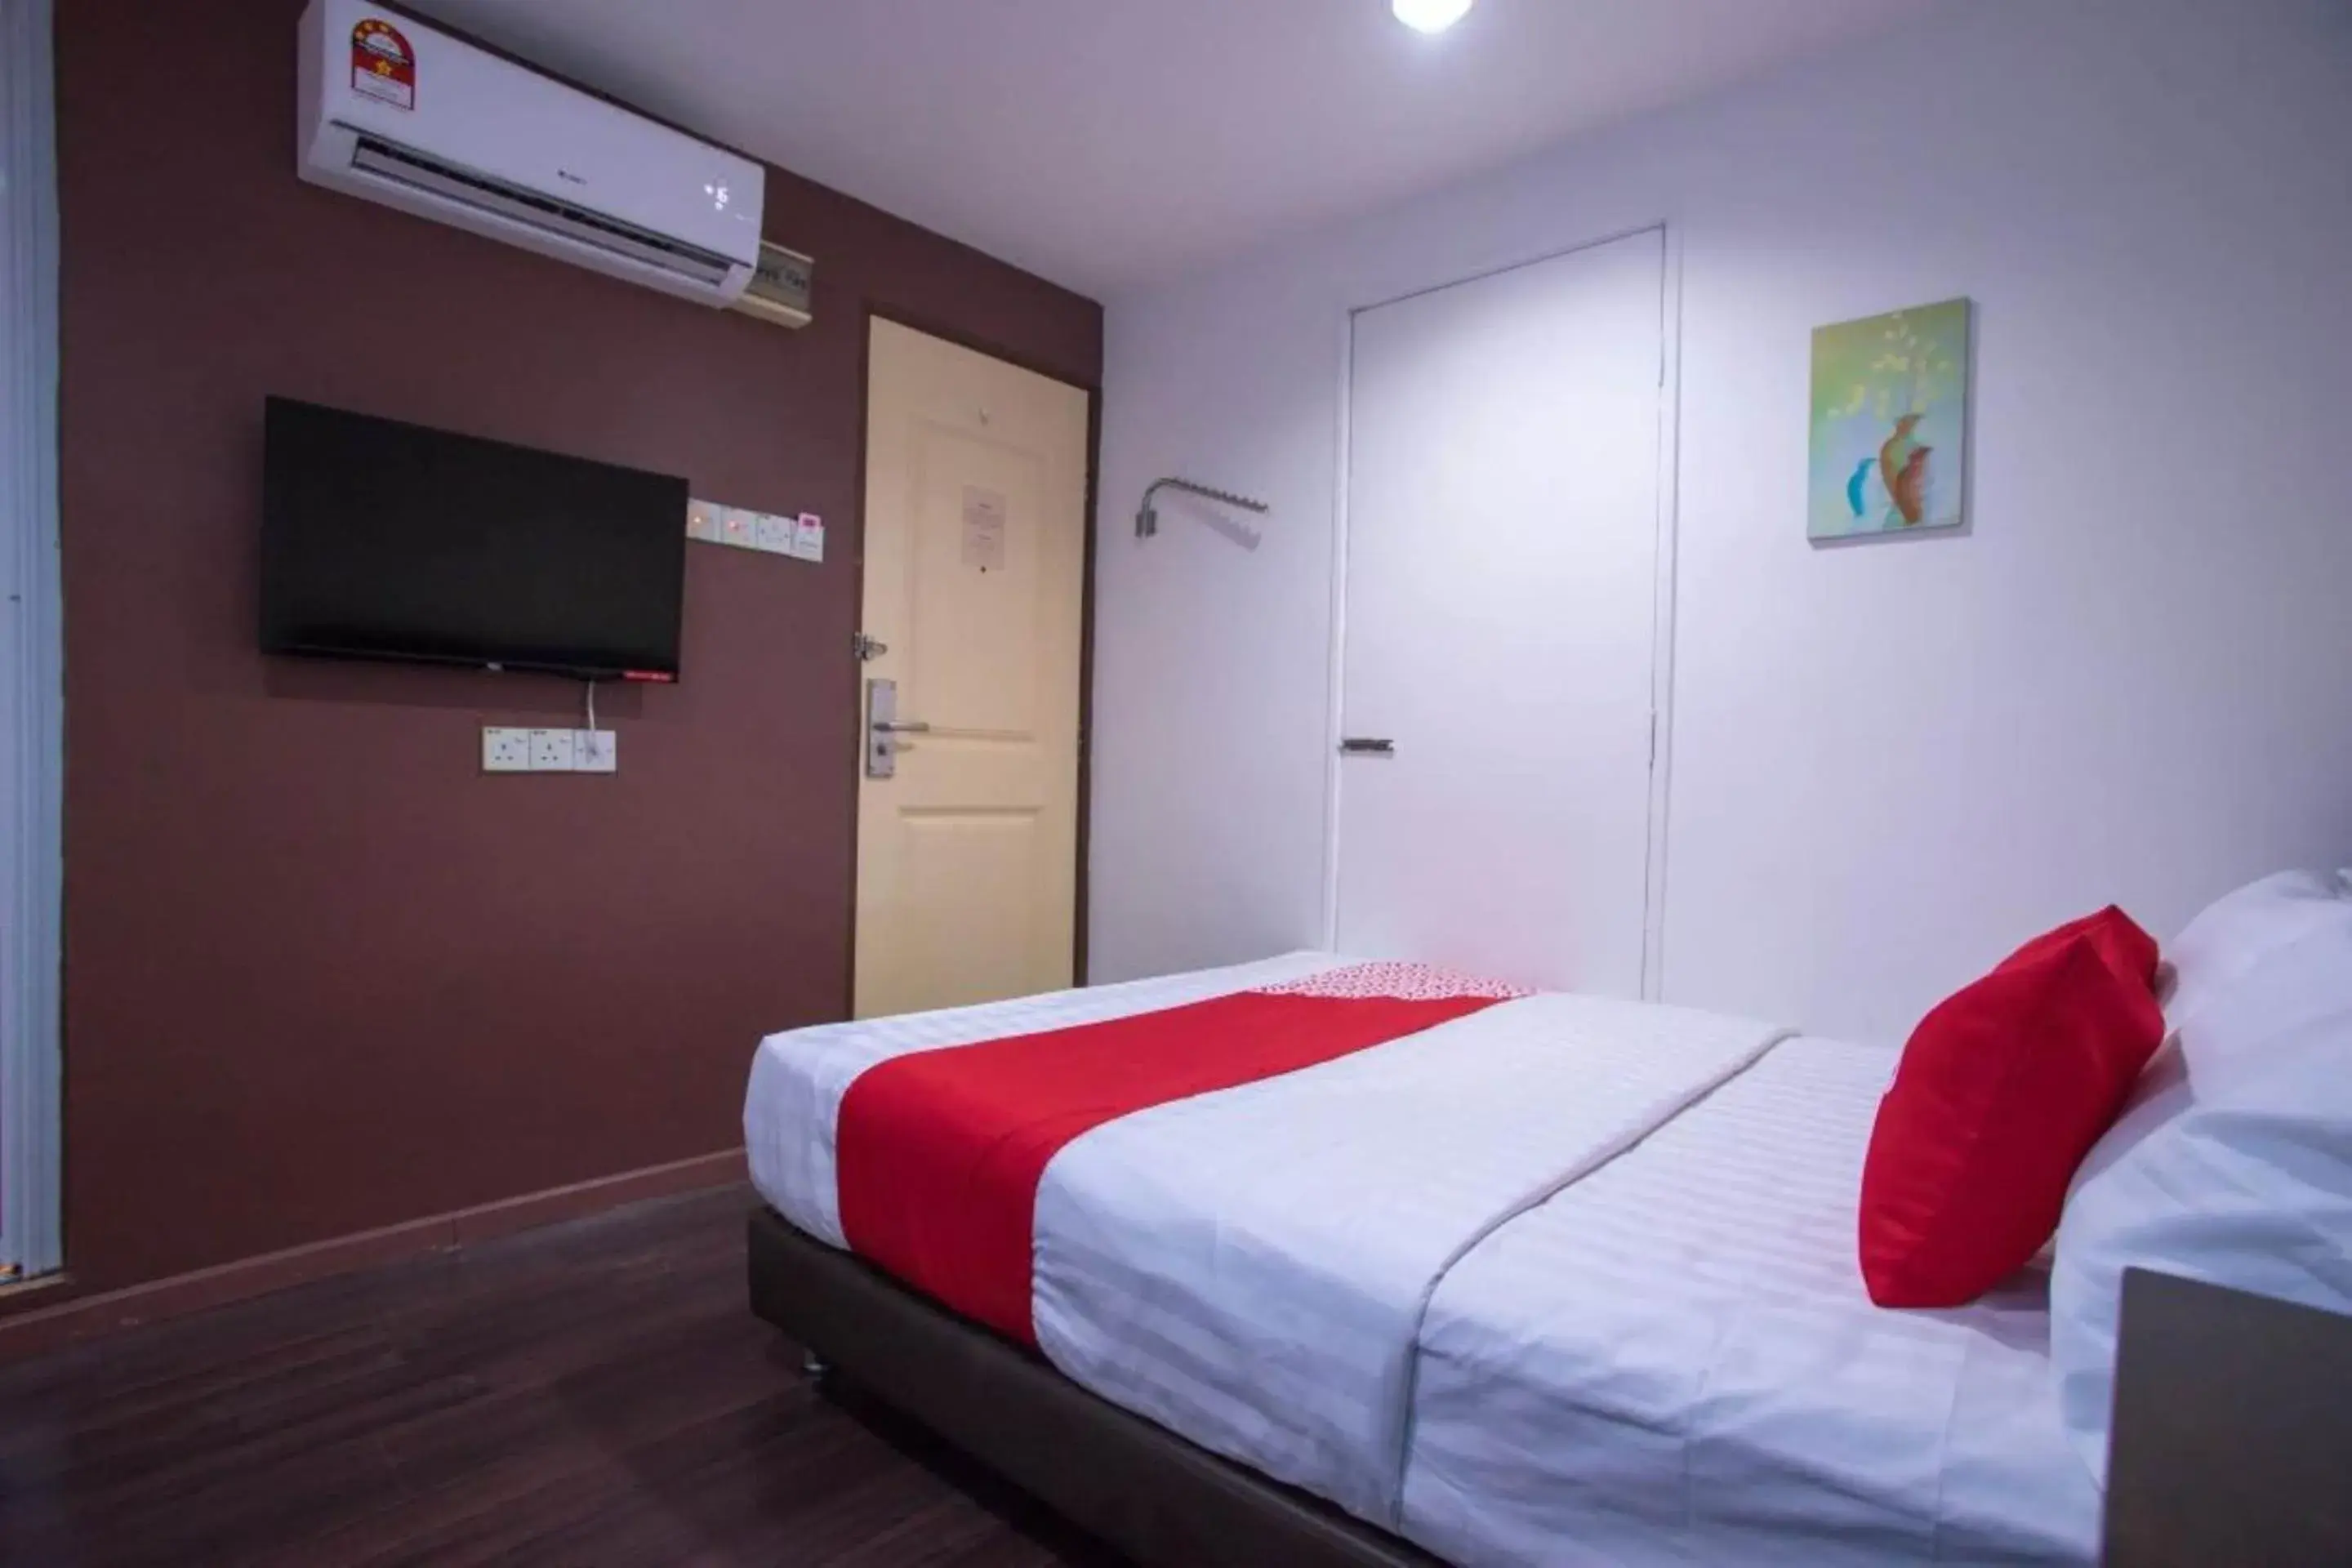 Bedroom, Bed in OYO 90281 Hotel Taj seksyen 13